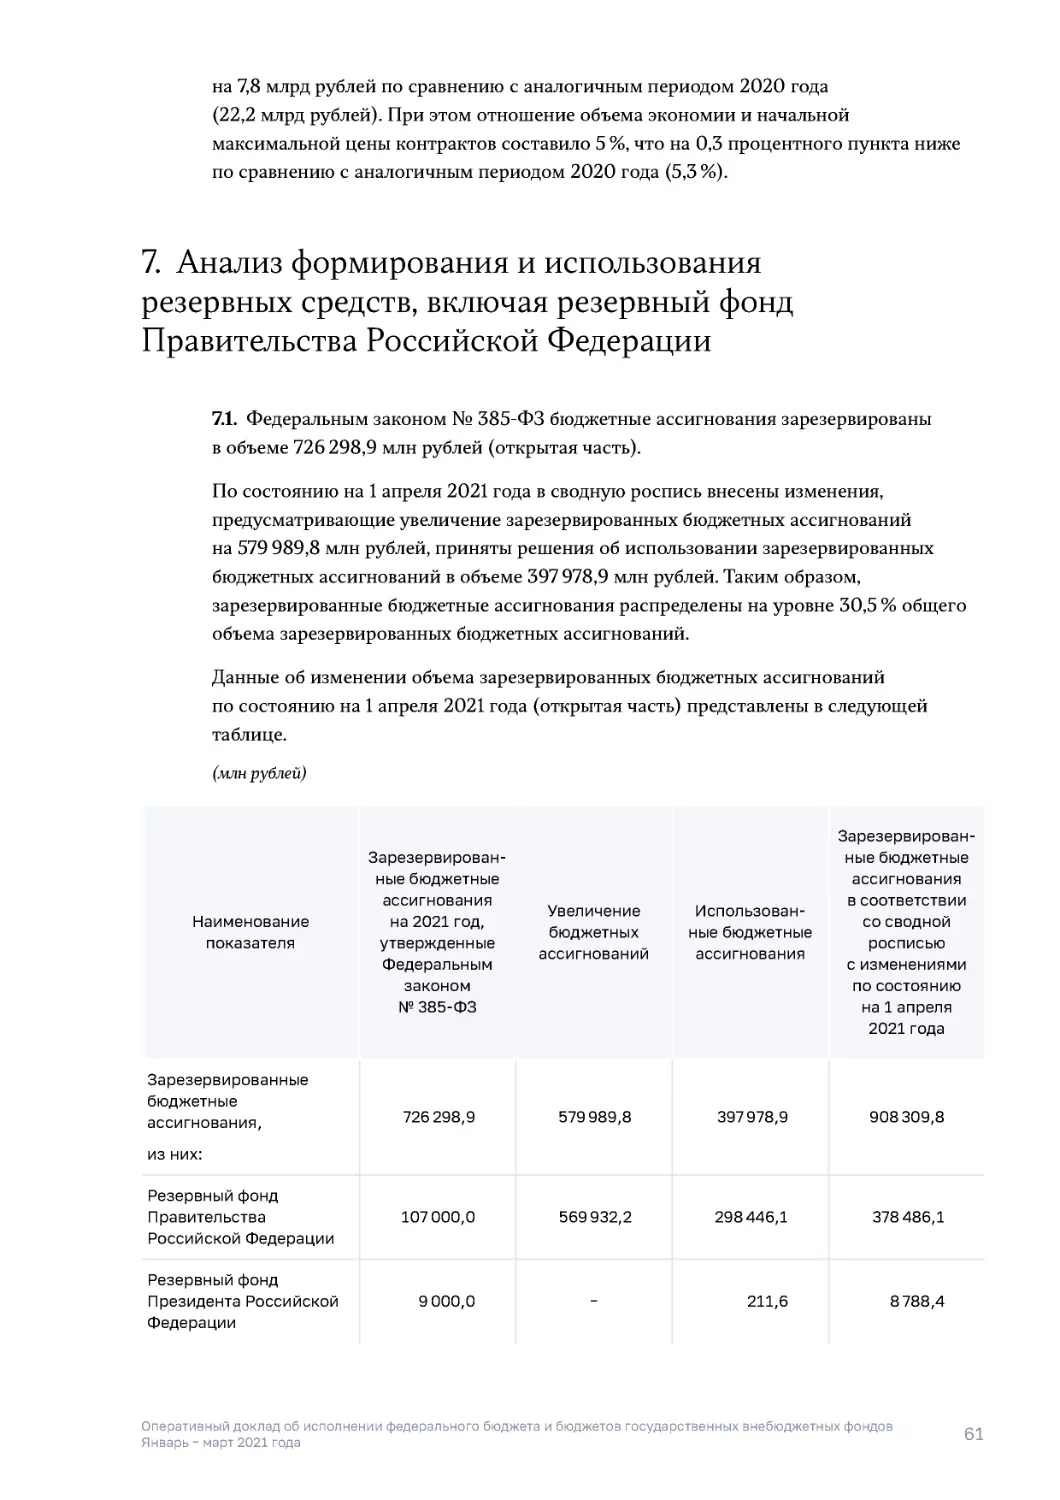 7. Анализ формирования и использования резервных средств, включая резервный фонд Правительства Российской Федерации